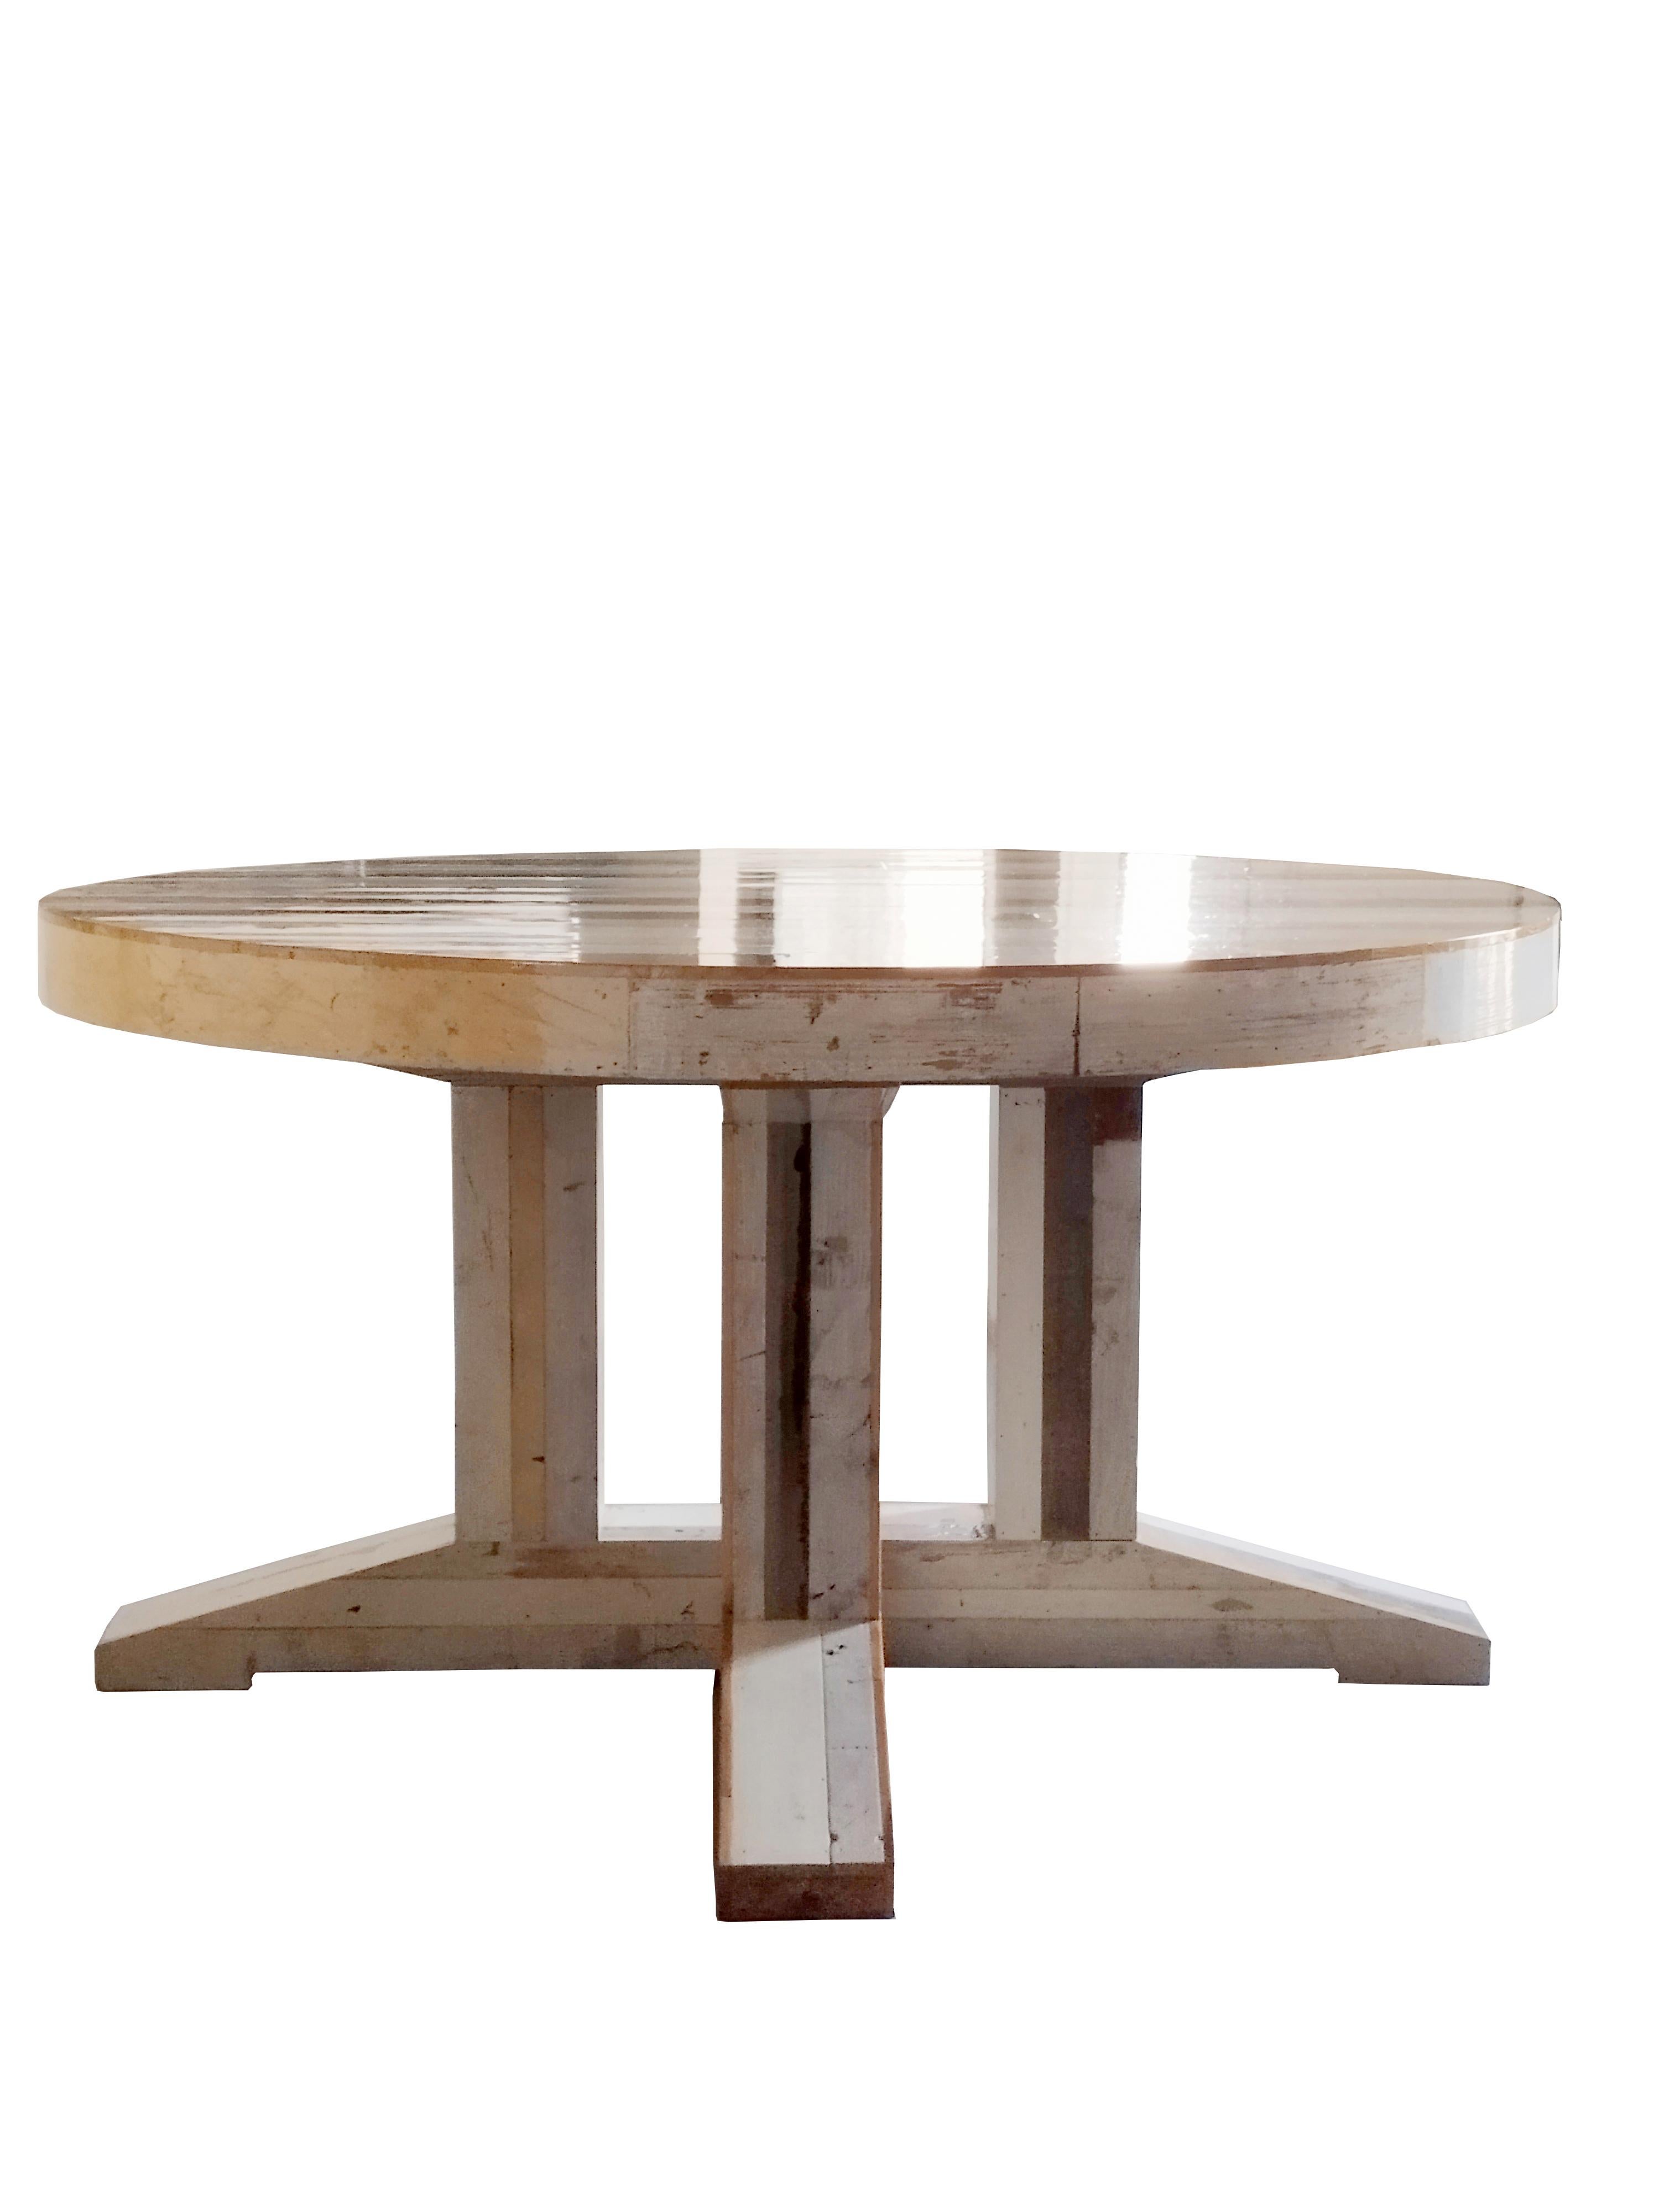 La table de cantine en bois de rebut Mod.2630F Tondo est l'une des pièces les plus importantes de Piet Hein Eek. Inspiré par les éléments laissés par le processus de fabrication, Piet a décidé un jour d'expérimenter avec du bois de récupération.